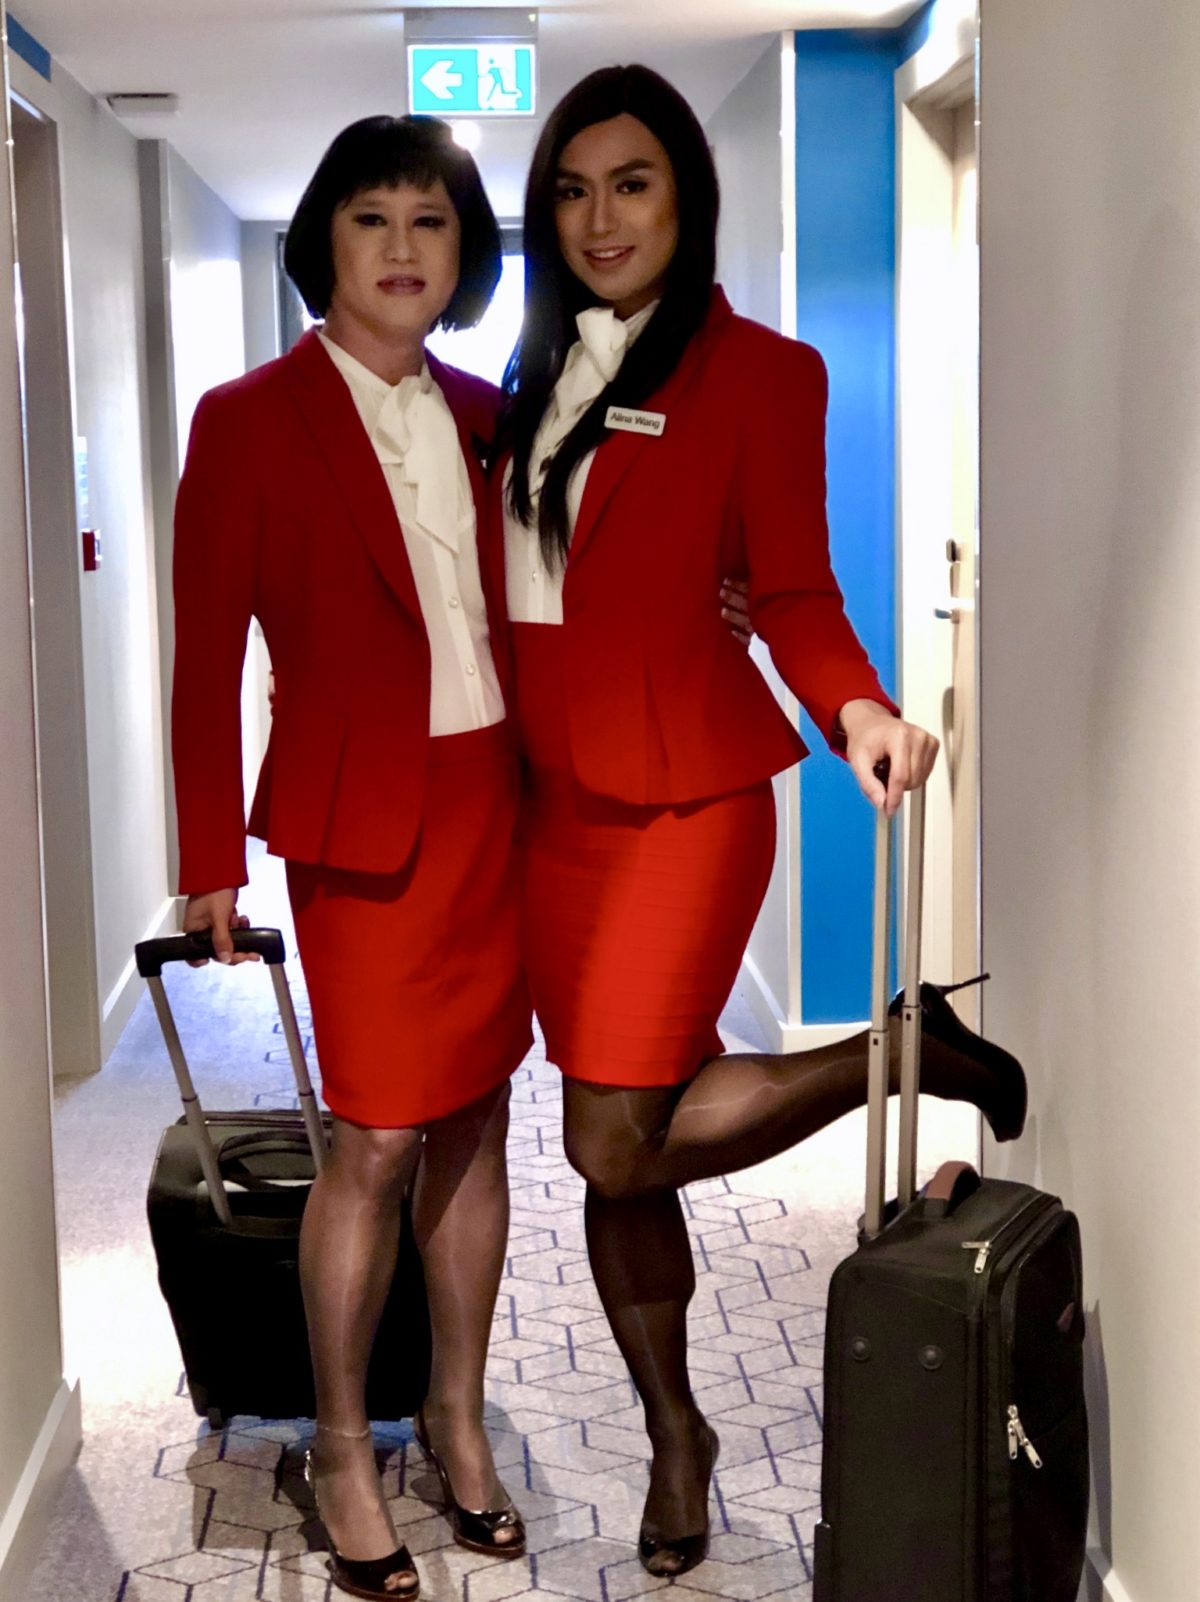 Air stewardesses Alina and April